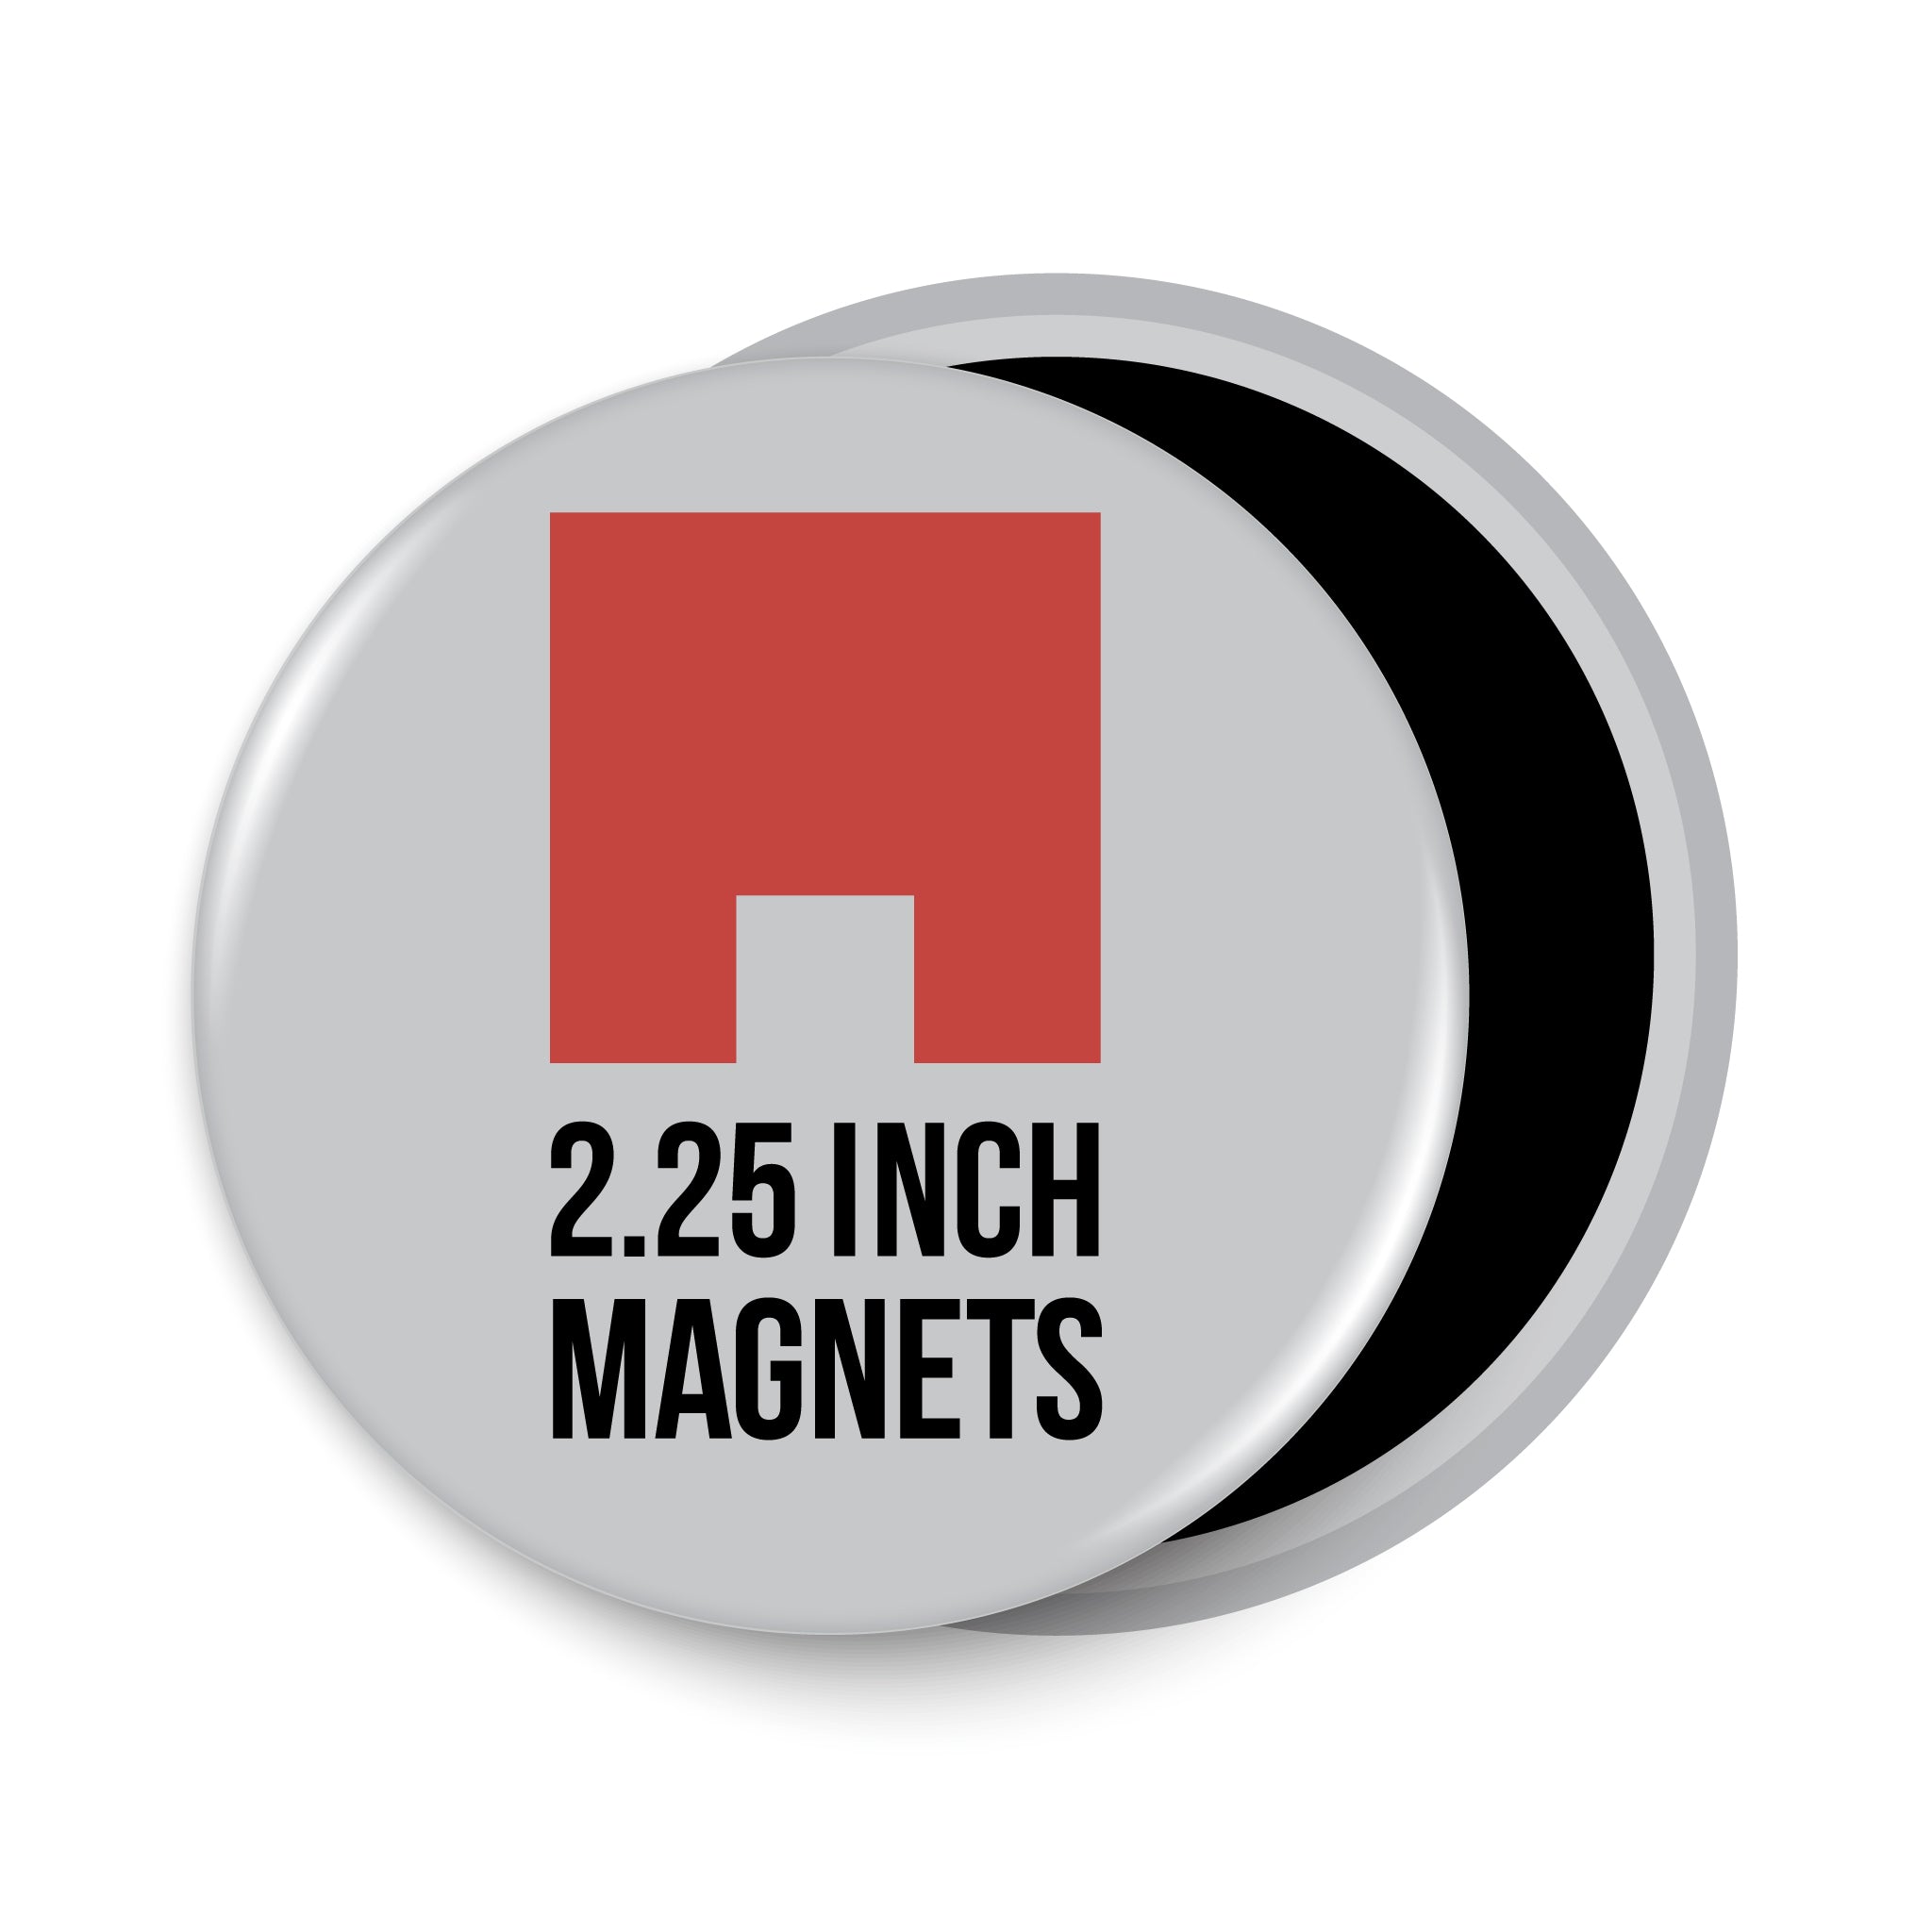 2.25" Round Magnet